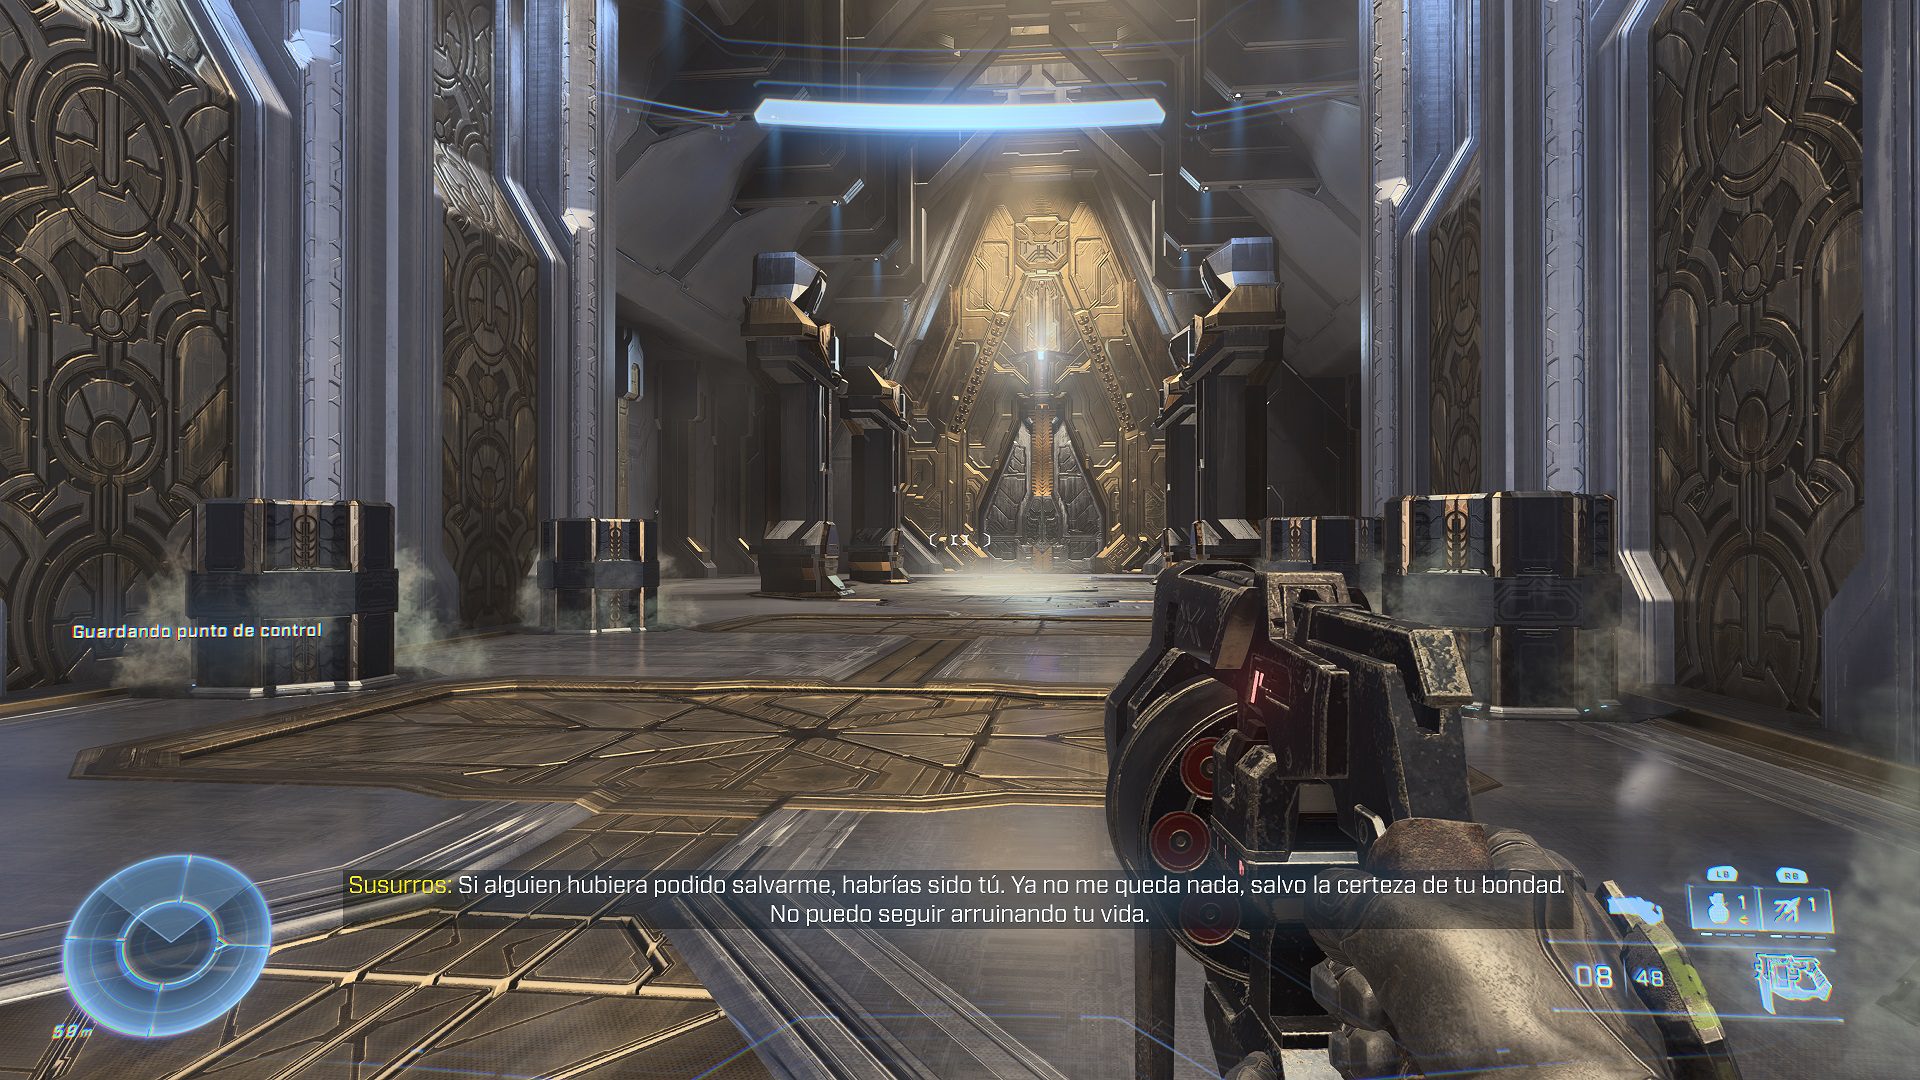 Análisis de Halo Infinite - El Jefe ha vuelto por la puerta grande - Analizamos Halo Infinite, el juego más esperado de Xbox que llega para reinventar la franquicia. ¿Listos para salvar a la humanidad?